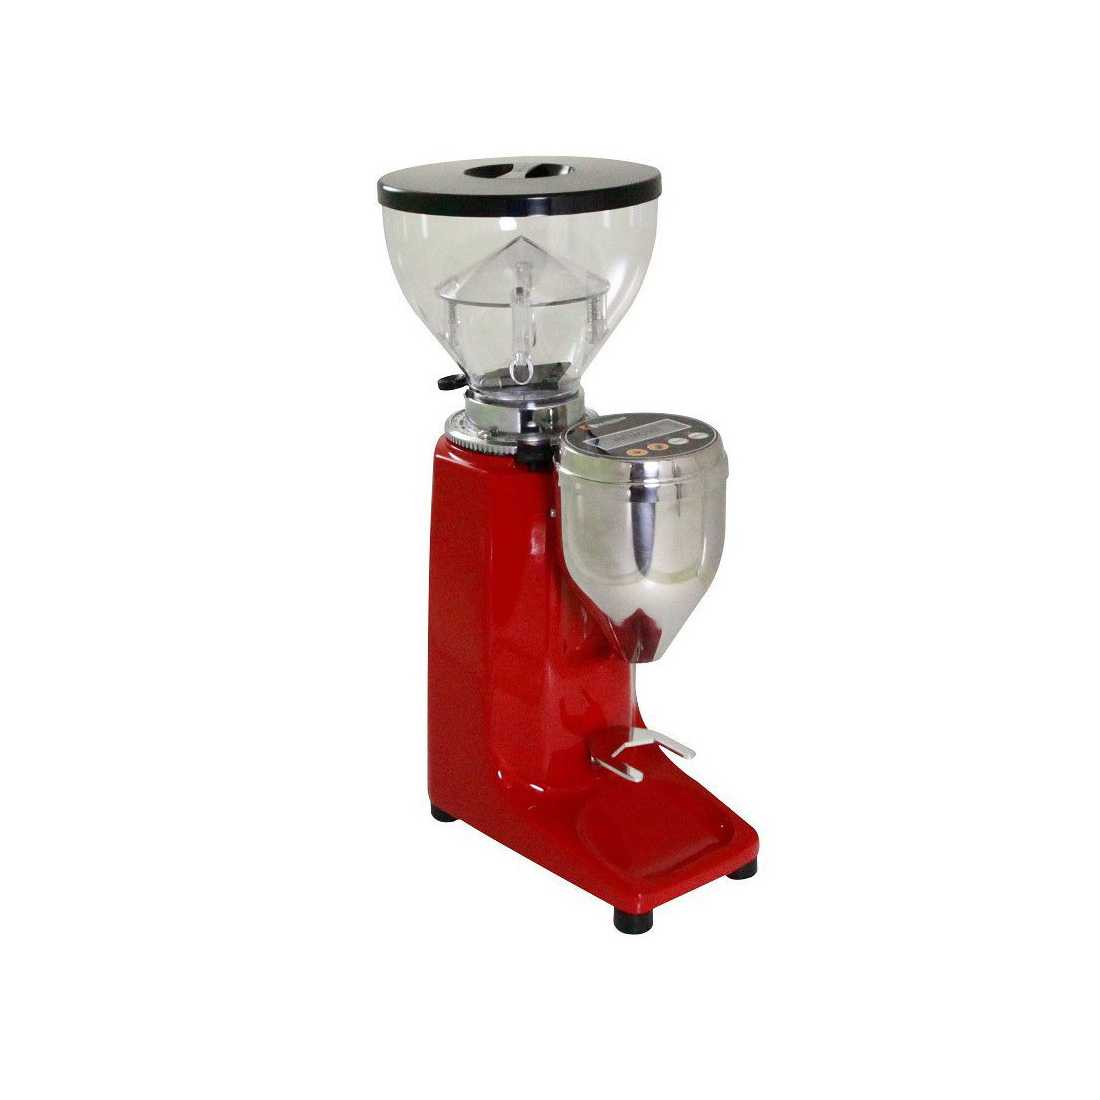 مطحنة قهوة حسب الطلب باللون الأحمر(Q13E) من كوامار|mkayn|مكاين